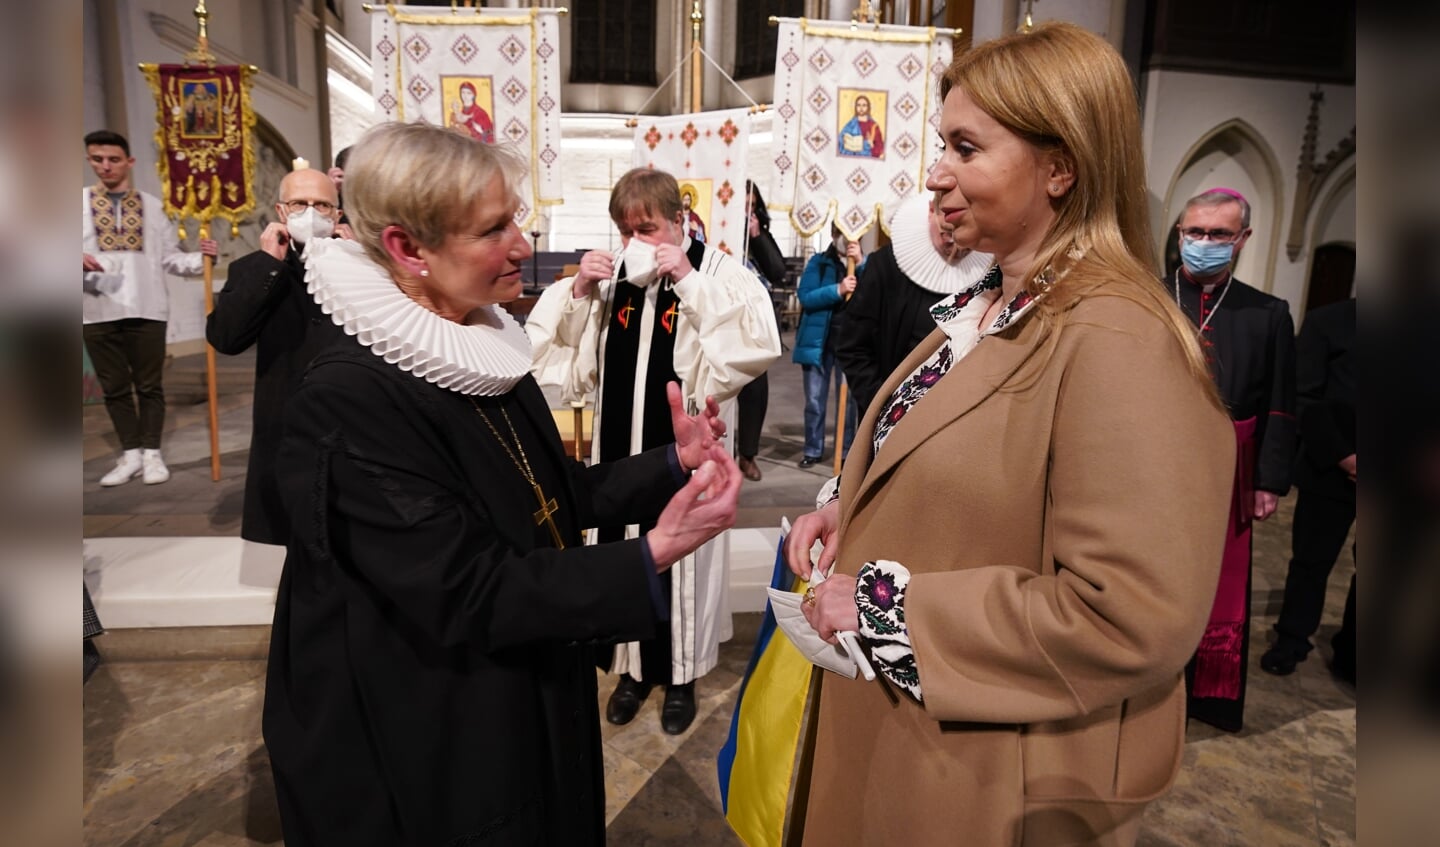 De lutherse bisschop Kirsten Fehrs uit Hamburg - volgens traditie met gesteven kraag - ontmoet Oekraiense vluchtelingen, na een gebedsdienst voor vrede in februari 2022.